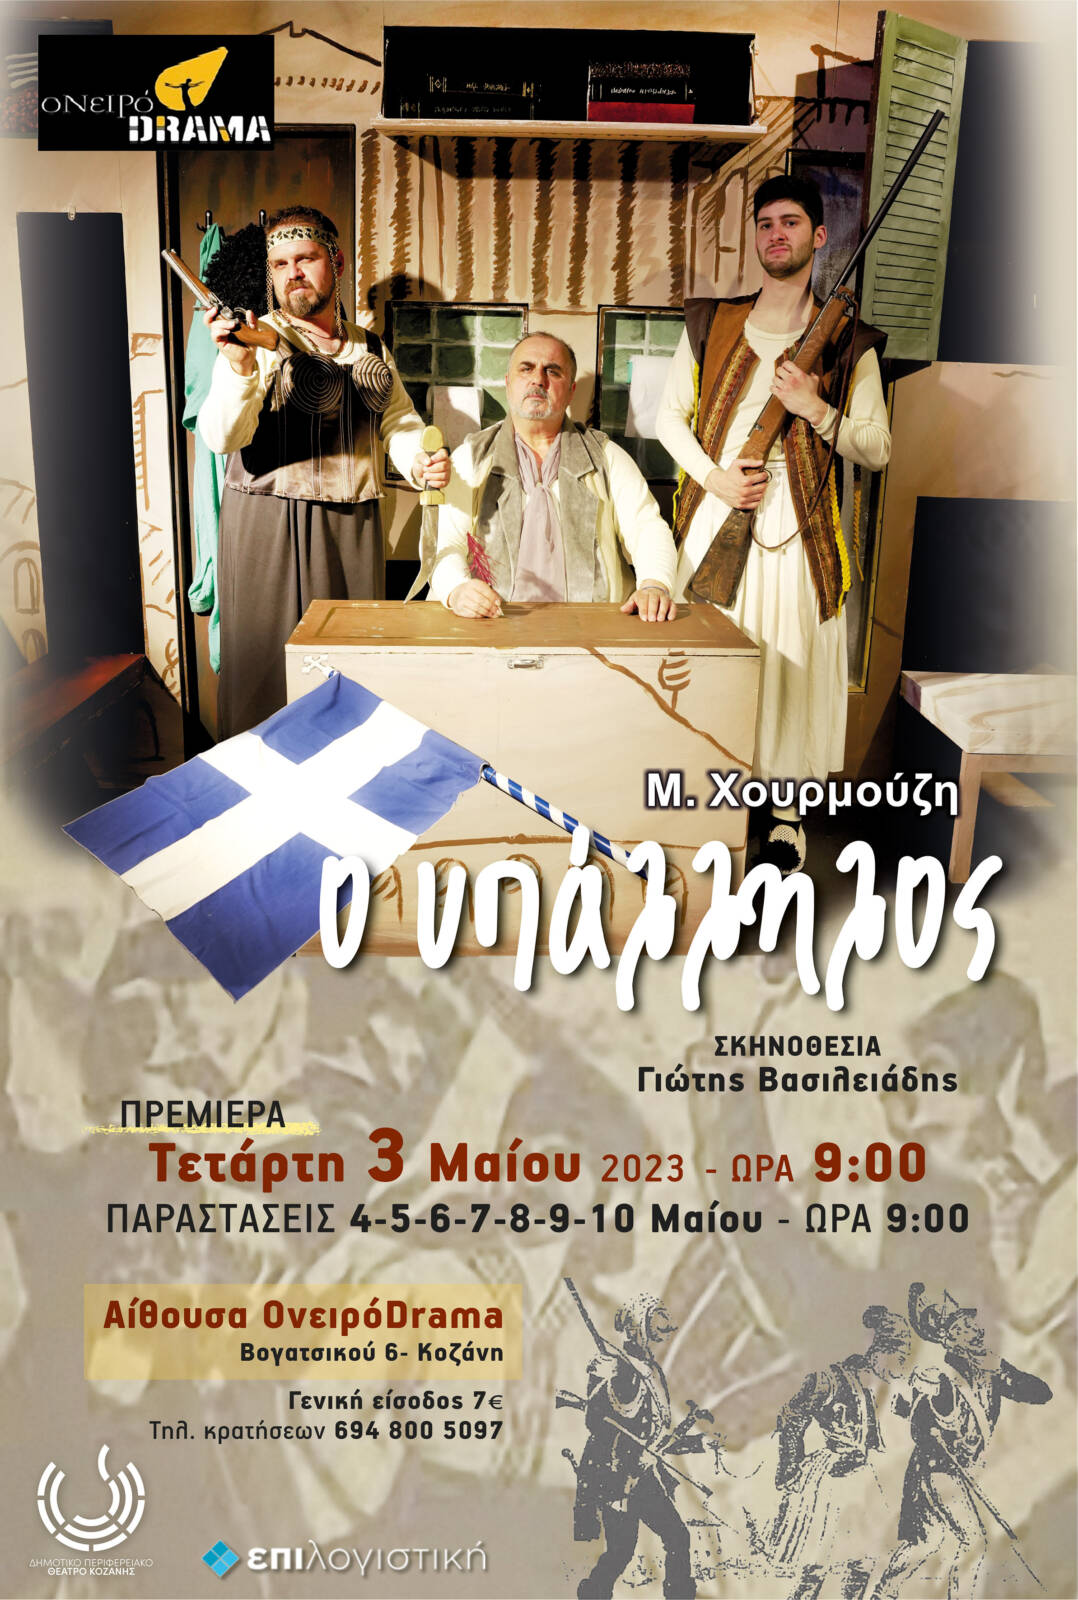 Θεατρική Ομάδα ΟνειρόDrama: «Ο Υπάλληλος» του Μιχαήλ Χουρμούζη από τις 3 έως και τις 10 Μαΐου